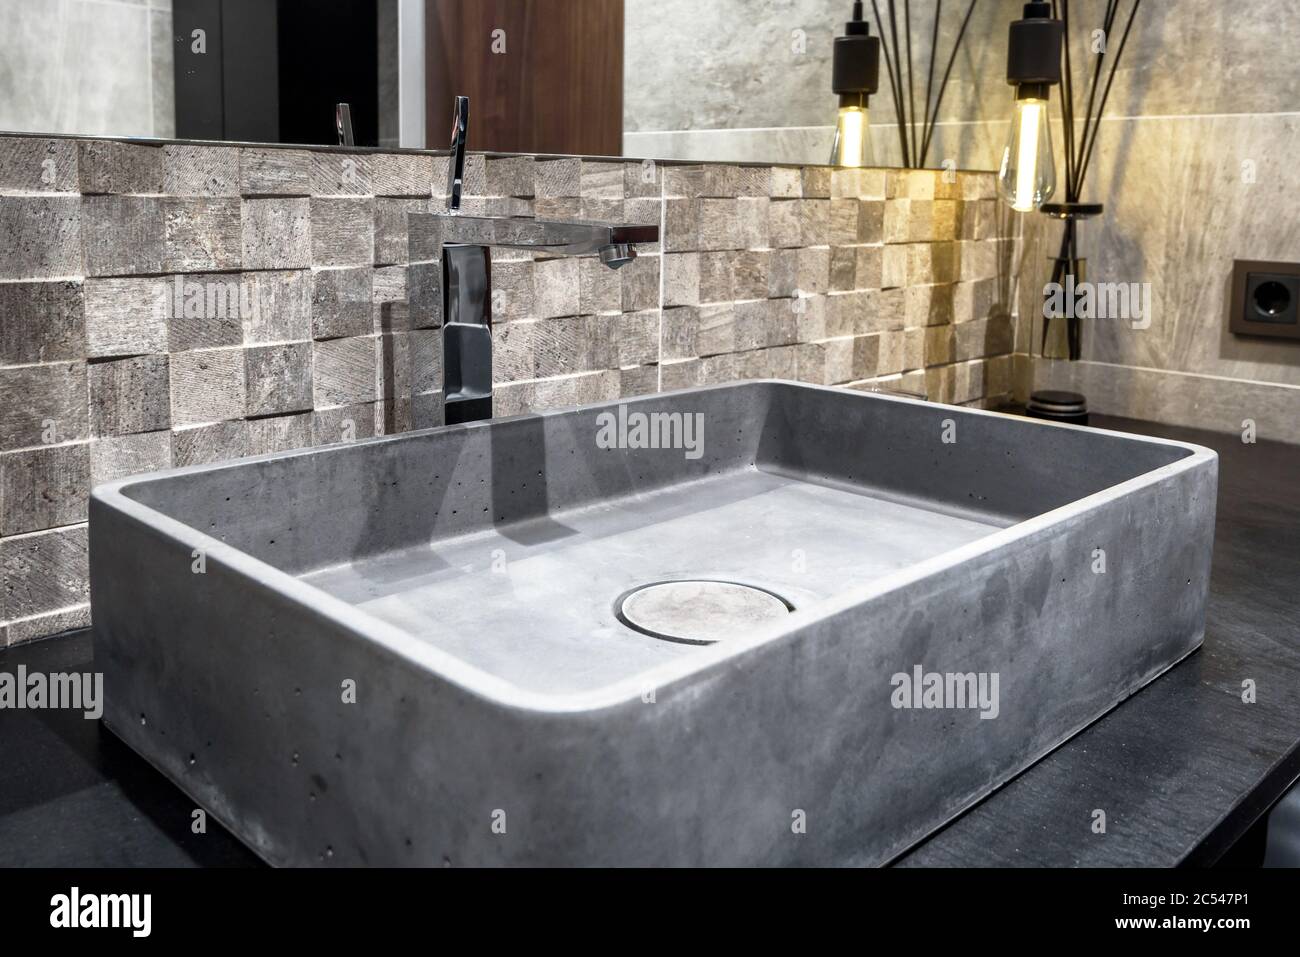 Mosca - 25 marzo 2018: Moderno ed elegante bagno in un albergo o casa residenziale. Interni con lavabo in cemento nel bagno. Min. Contemporaneo Foto Stock